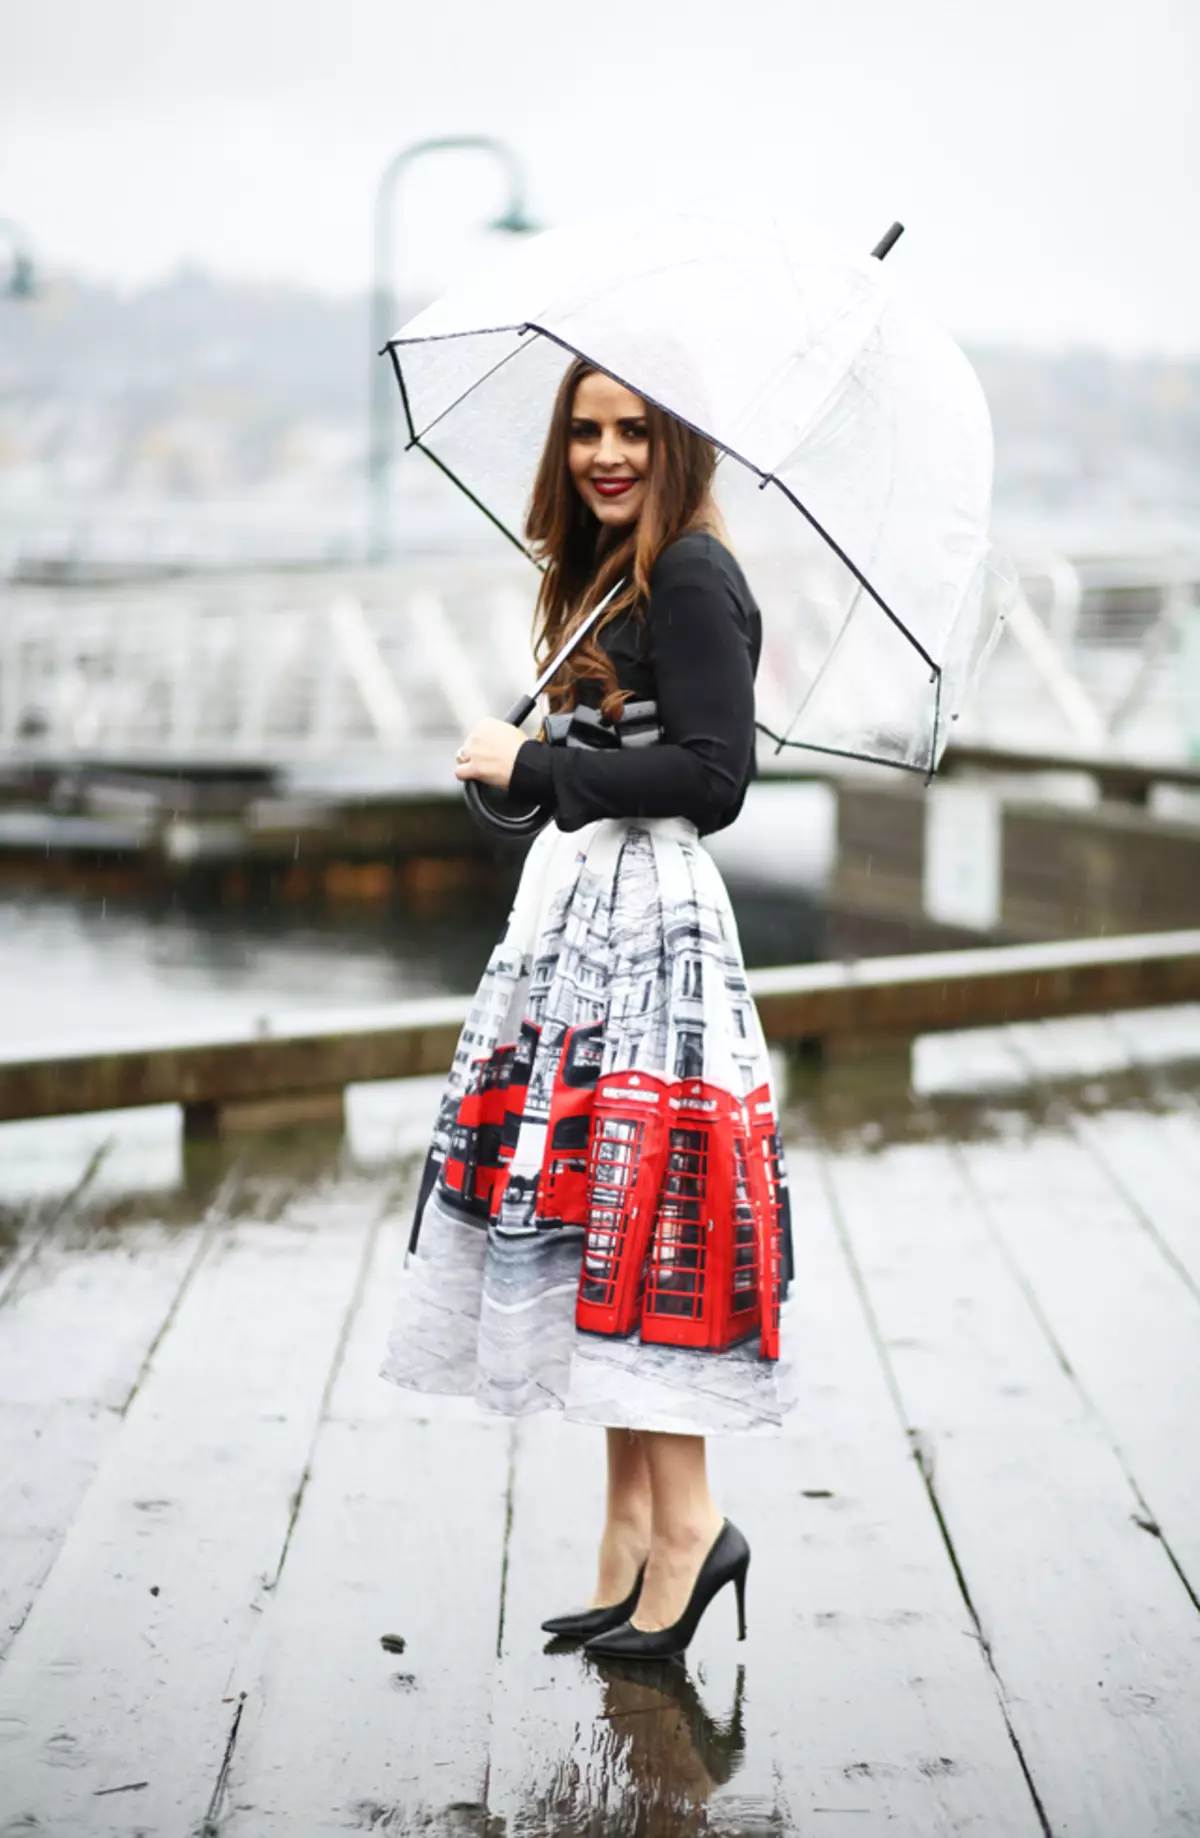 Umbrella dress. Зонт прозрачный. Девушка с зонтом. Зонт прозрачный красивый. Образ девушки с зонтом.